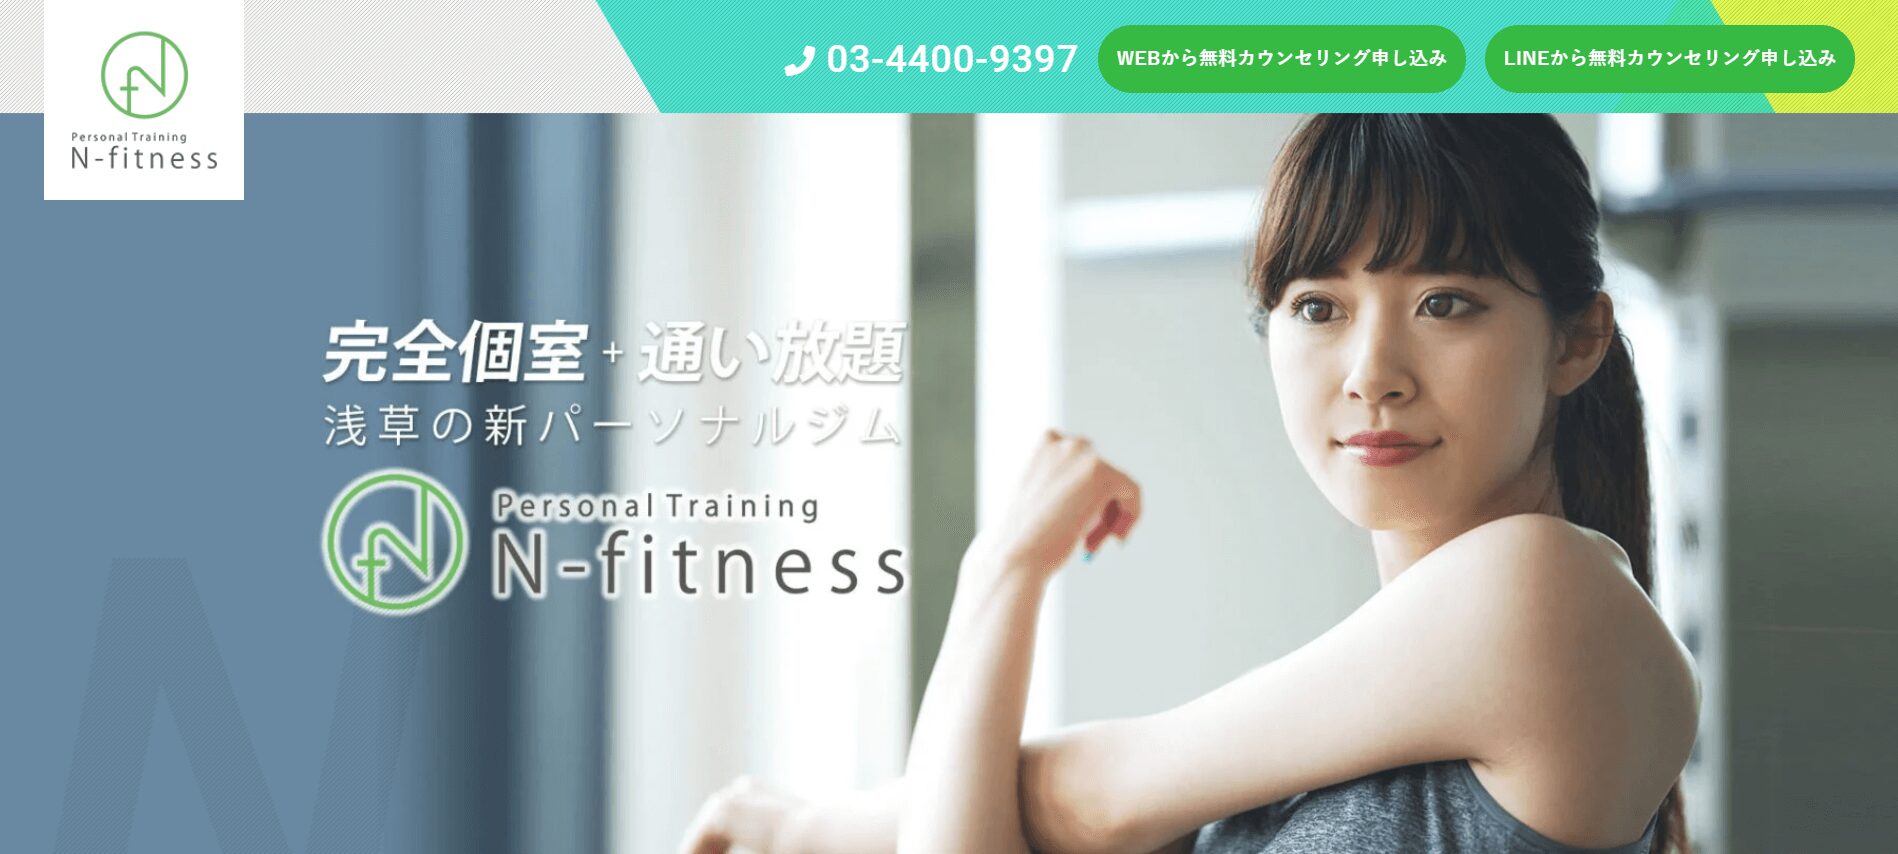 N-fitness 浅草店